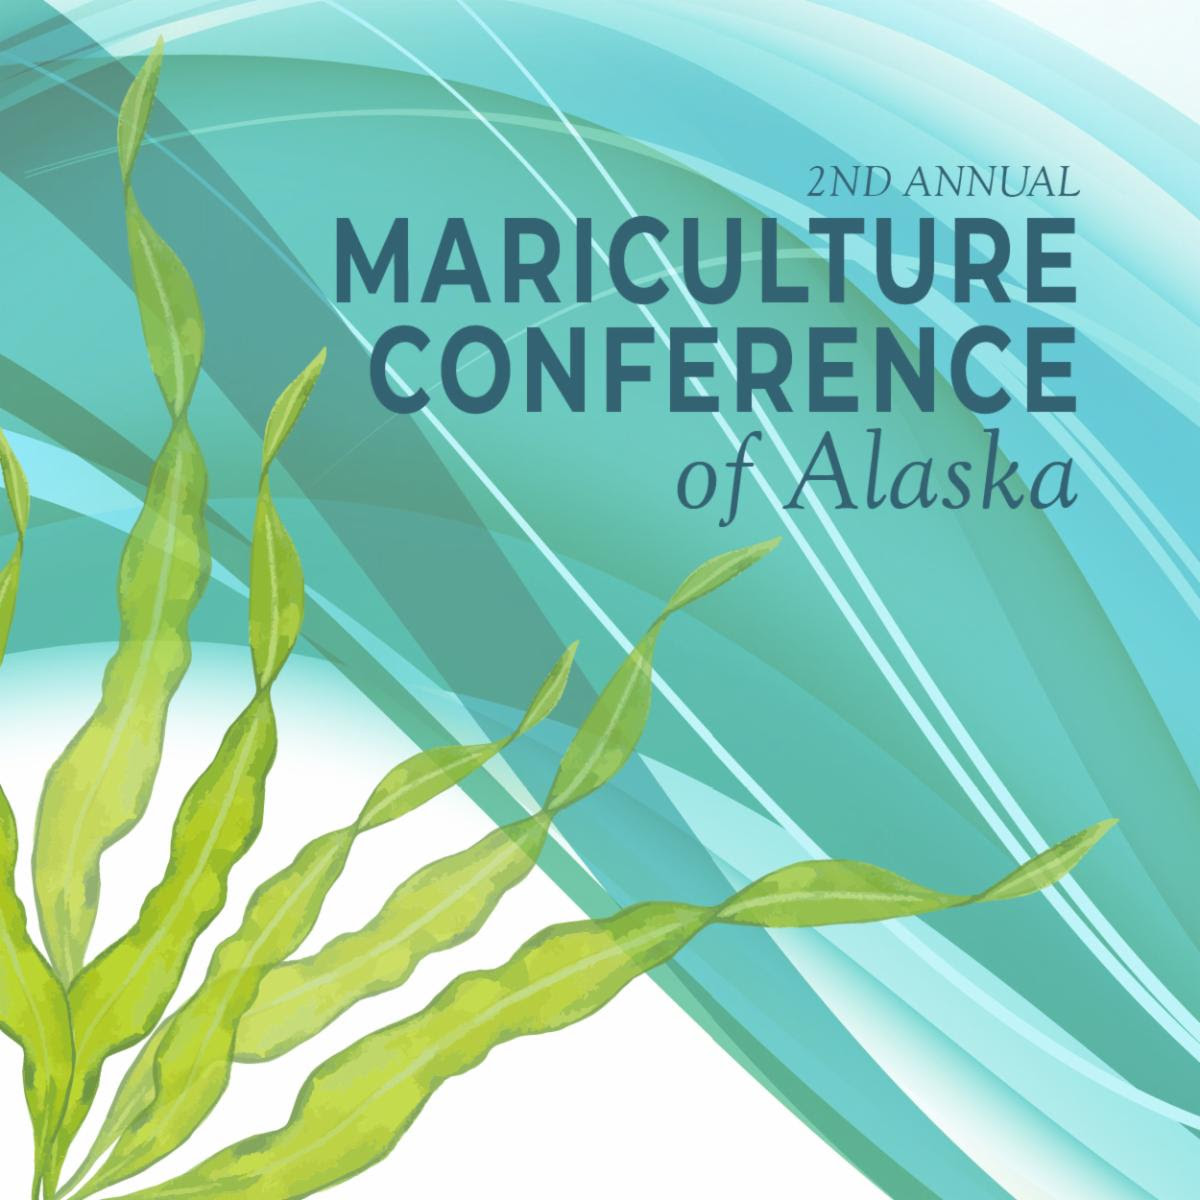 Events Mariculture Conference (Juneau), Kelp Farming (Kodiak